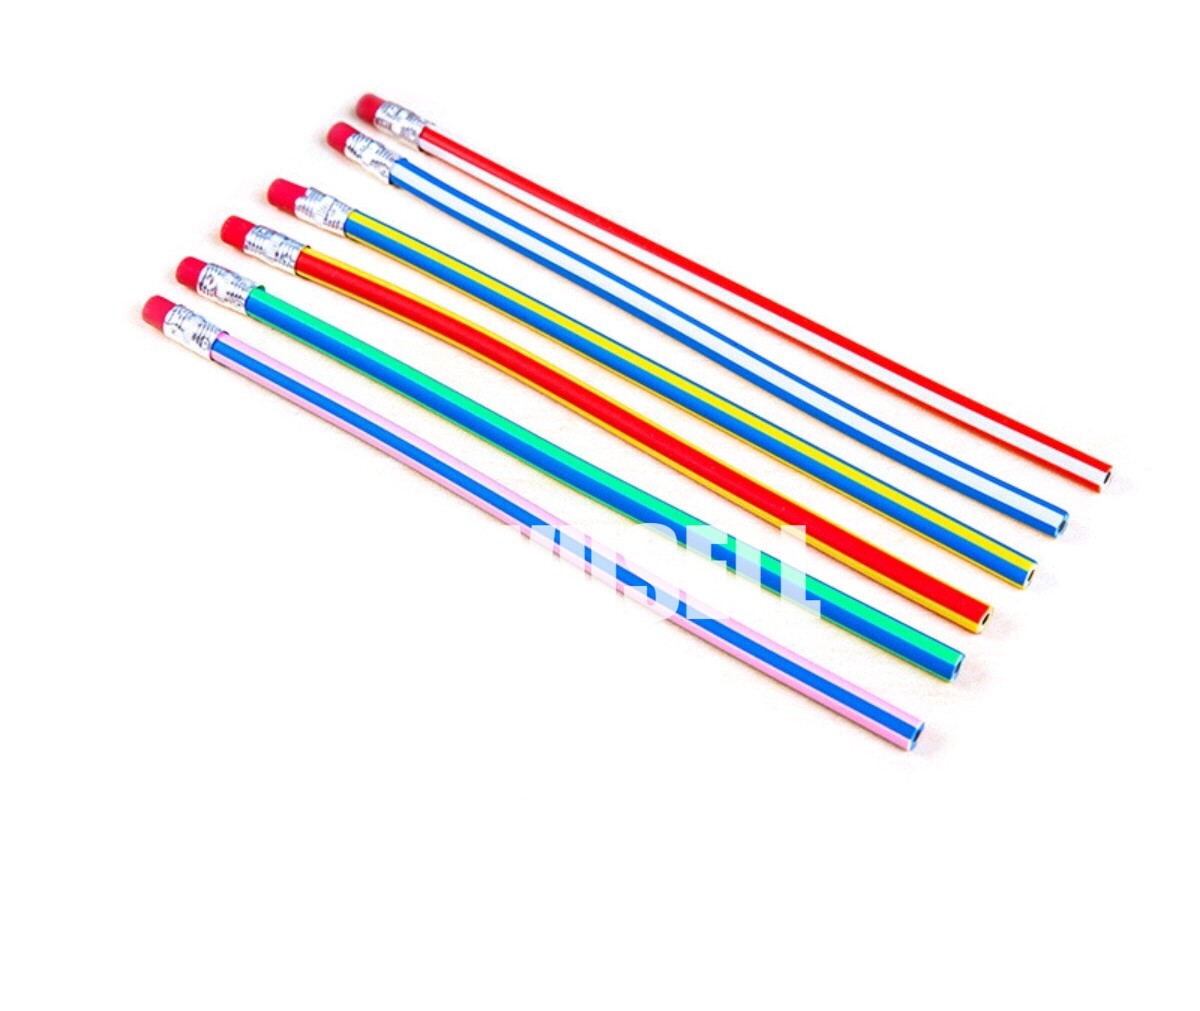  Zonon 24 Pieces Flexible Bendable Pencils Soft Bendy Pencils  Colorful Stripe Bendable Pencils Colored Bend Pencils